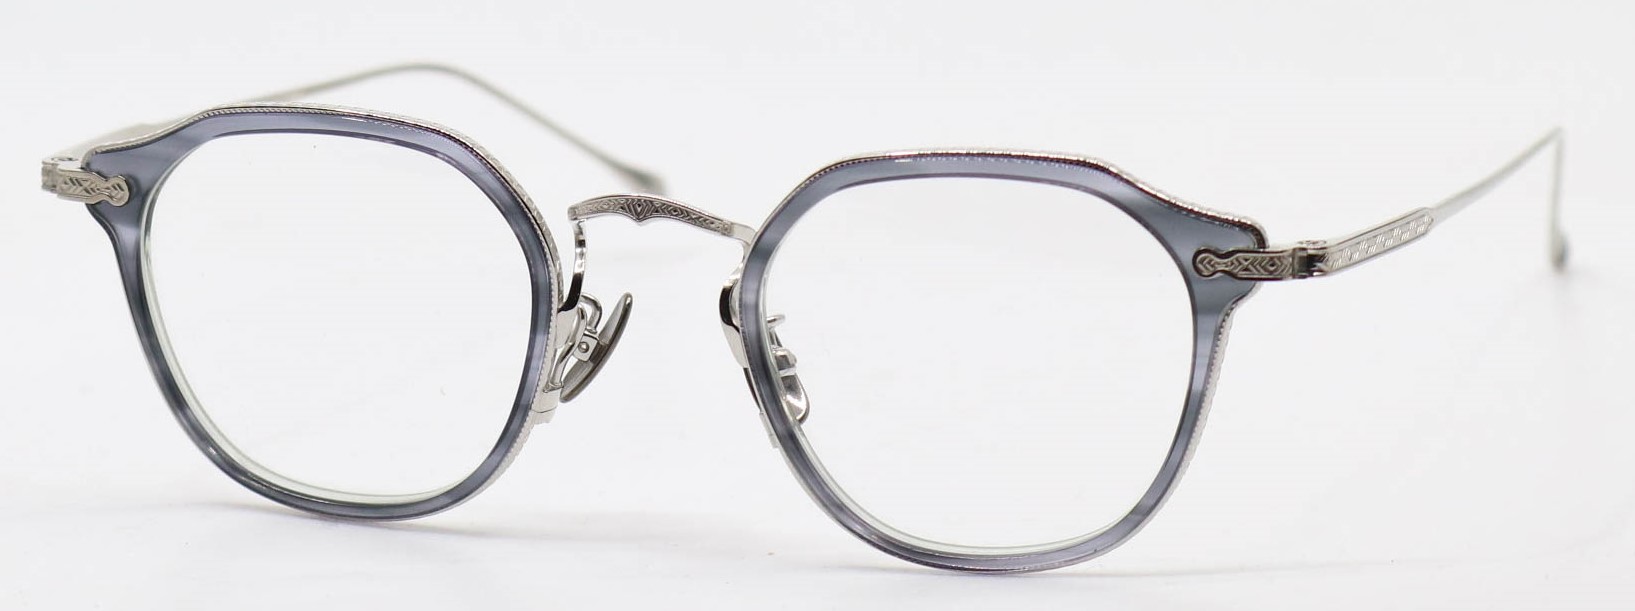 眼鏡のカラータイプC-4 GraySasa-LightGreen/Silver